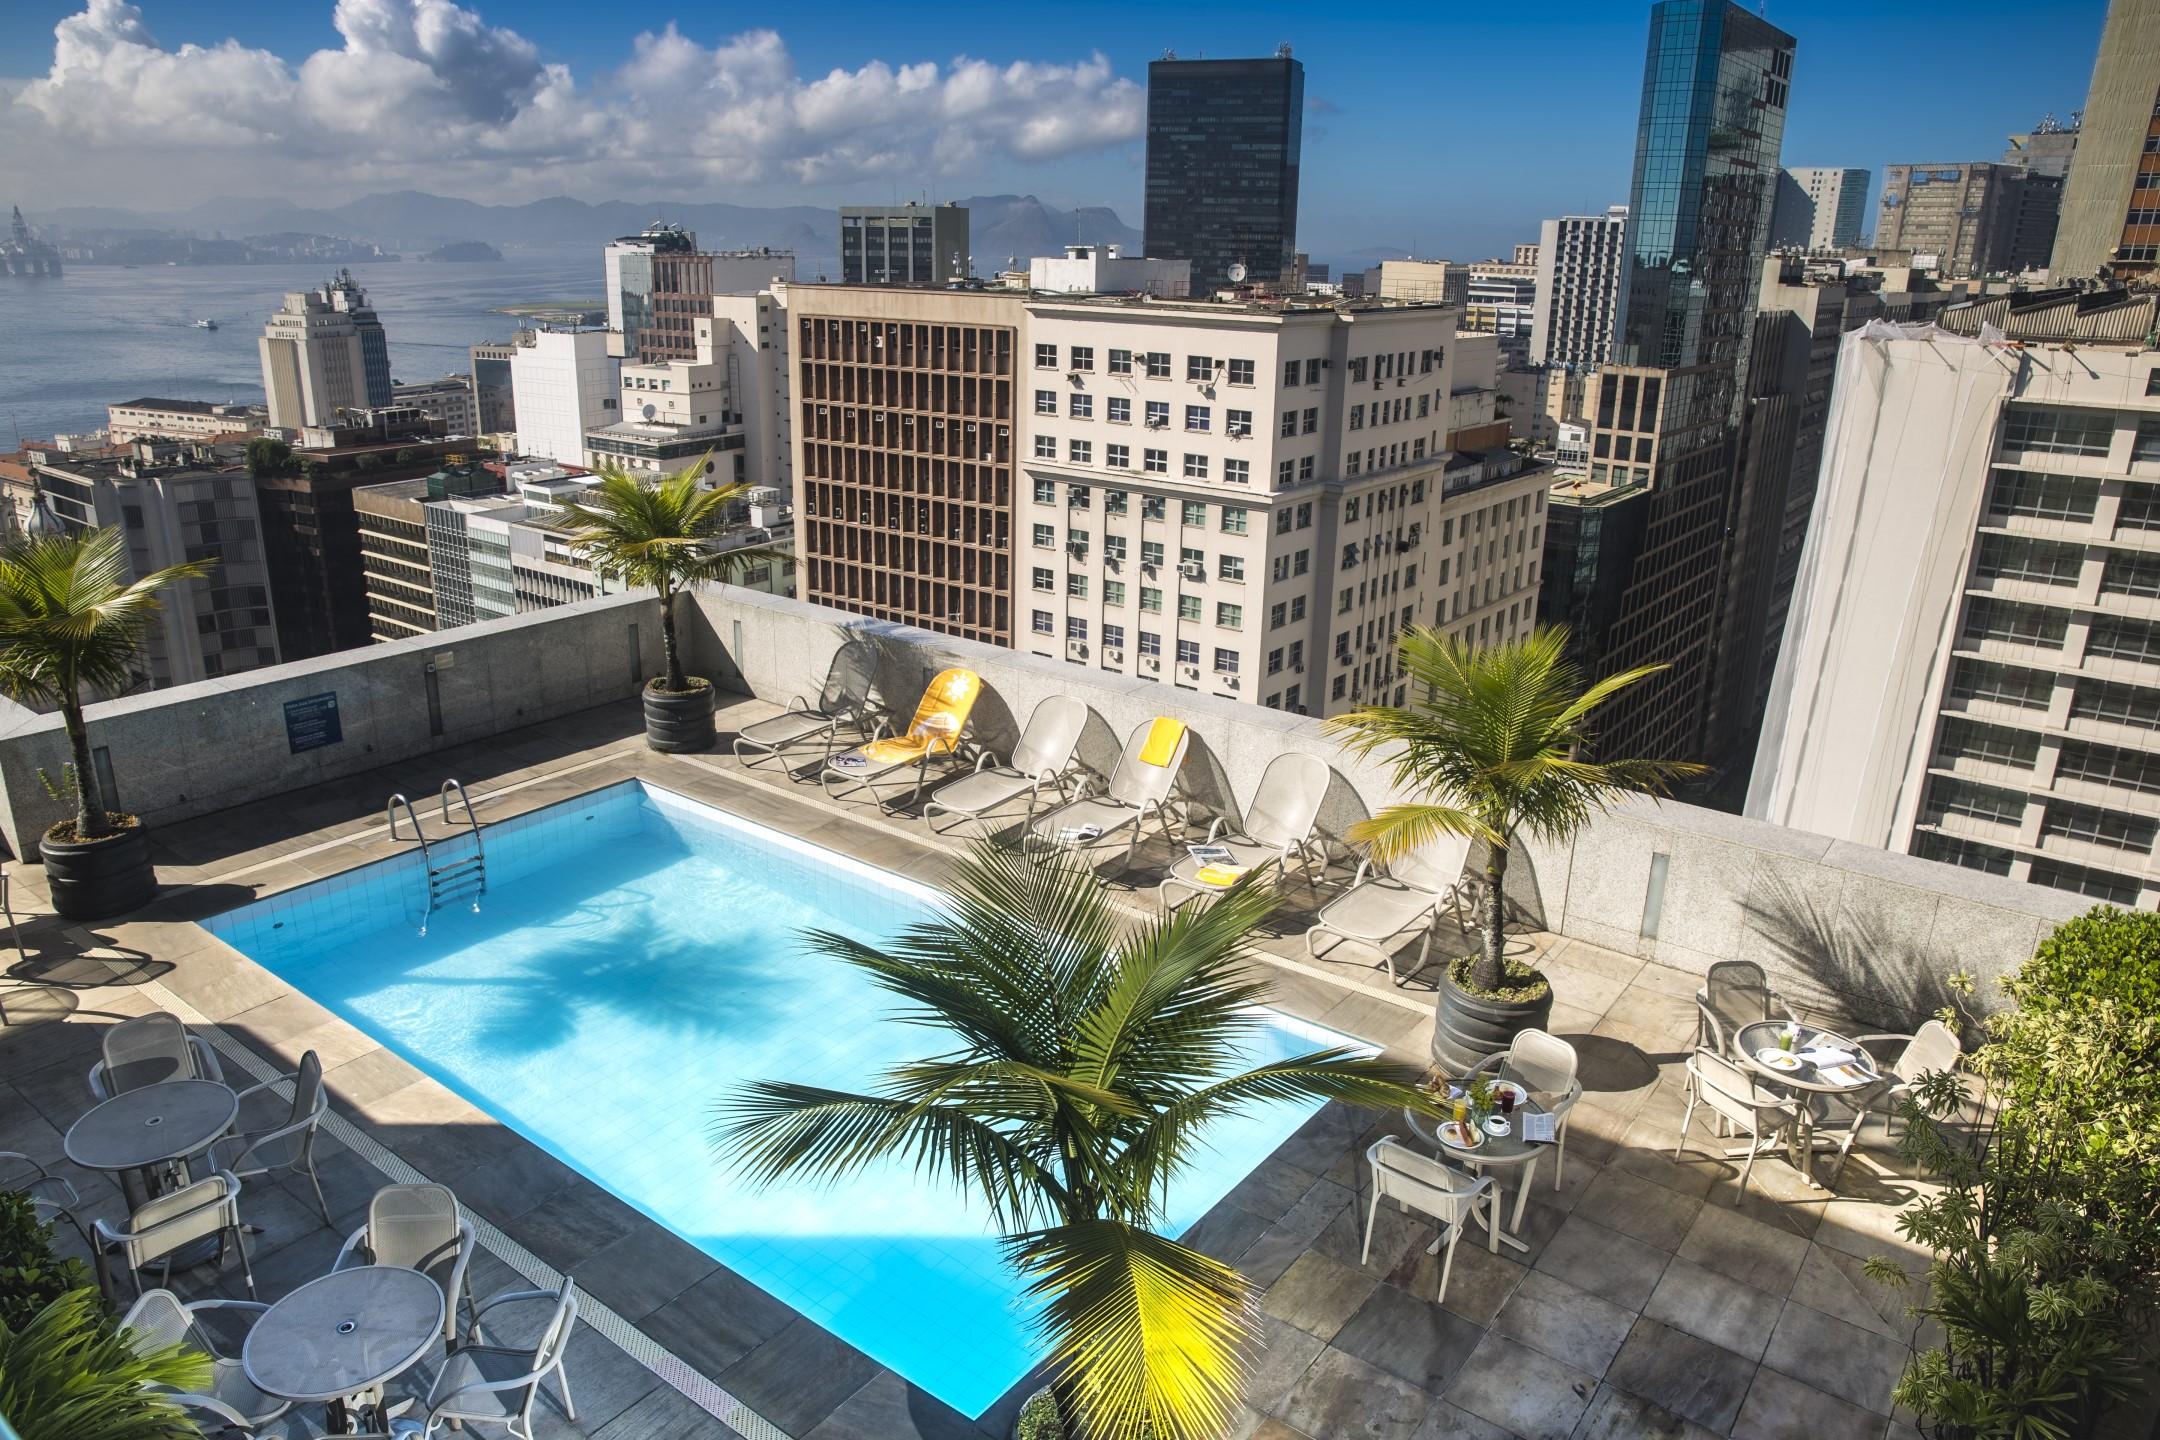 Foto da cobertura de um hotel da Rede Windsor no Centro do Rio. Na foto, há uma piscina, plantas e espreguiçadeiras. Ao redor, prédios do Centro do Rio.